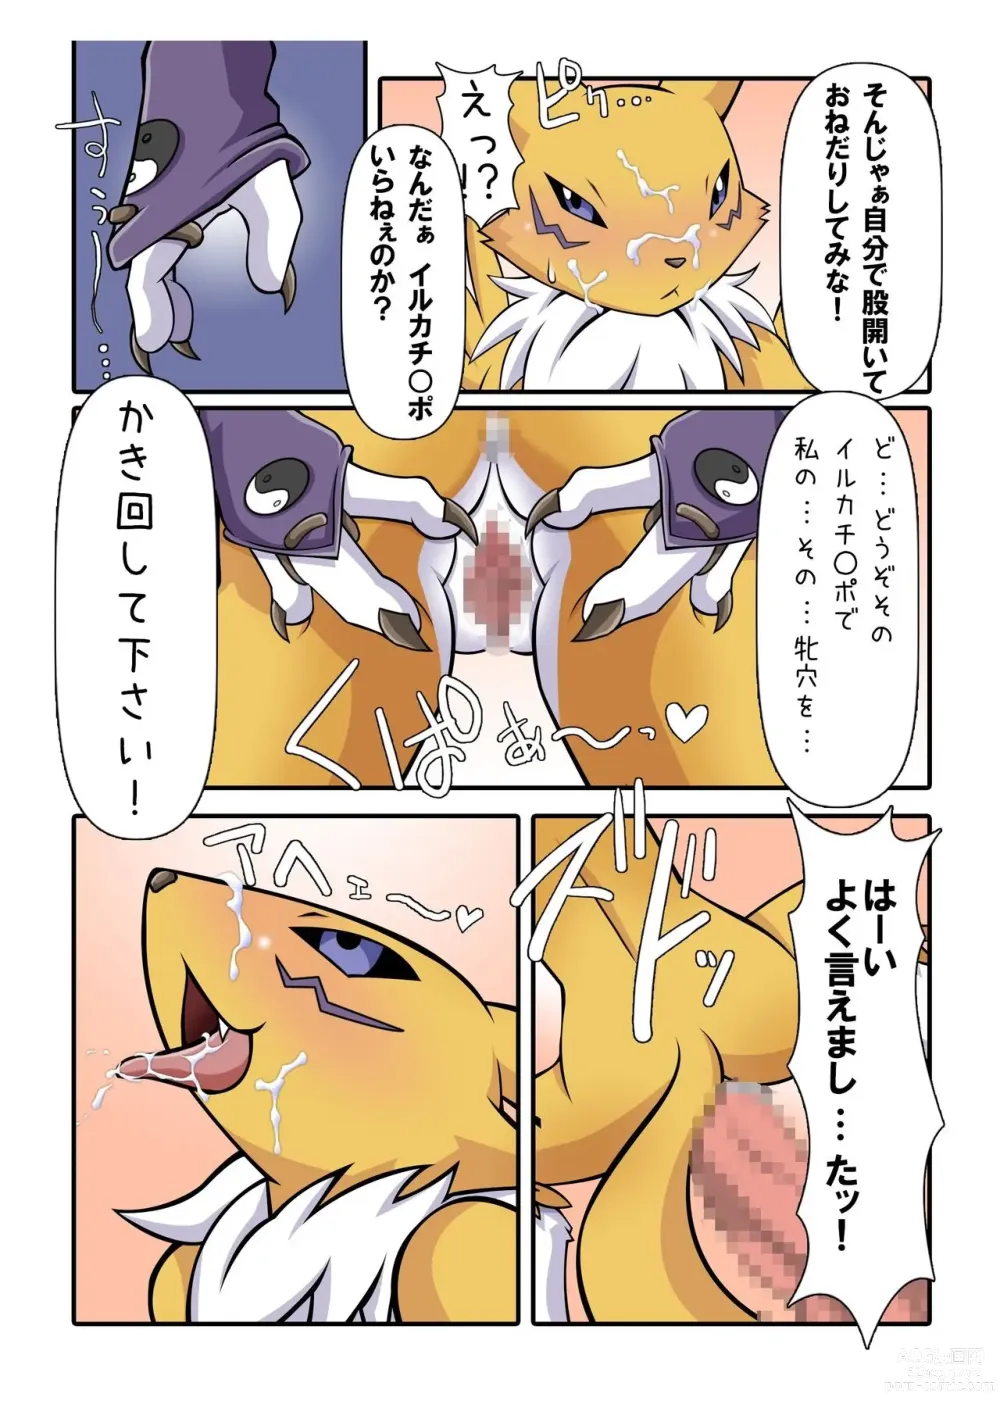 Page 7 of doujinshi 『Mofuya DOLL ♥ FIN』